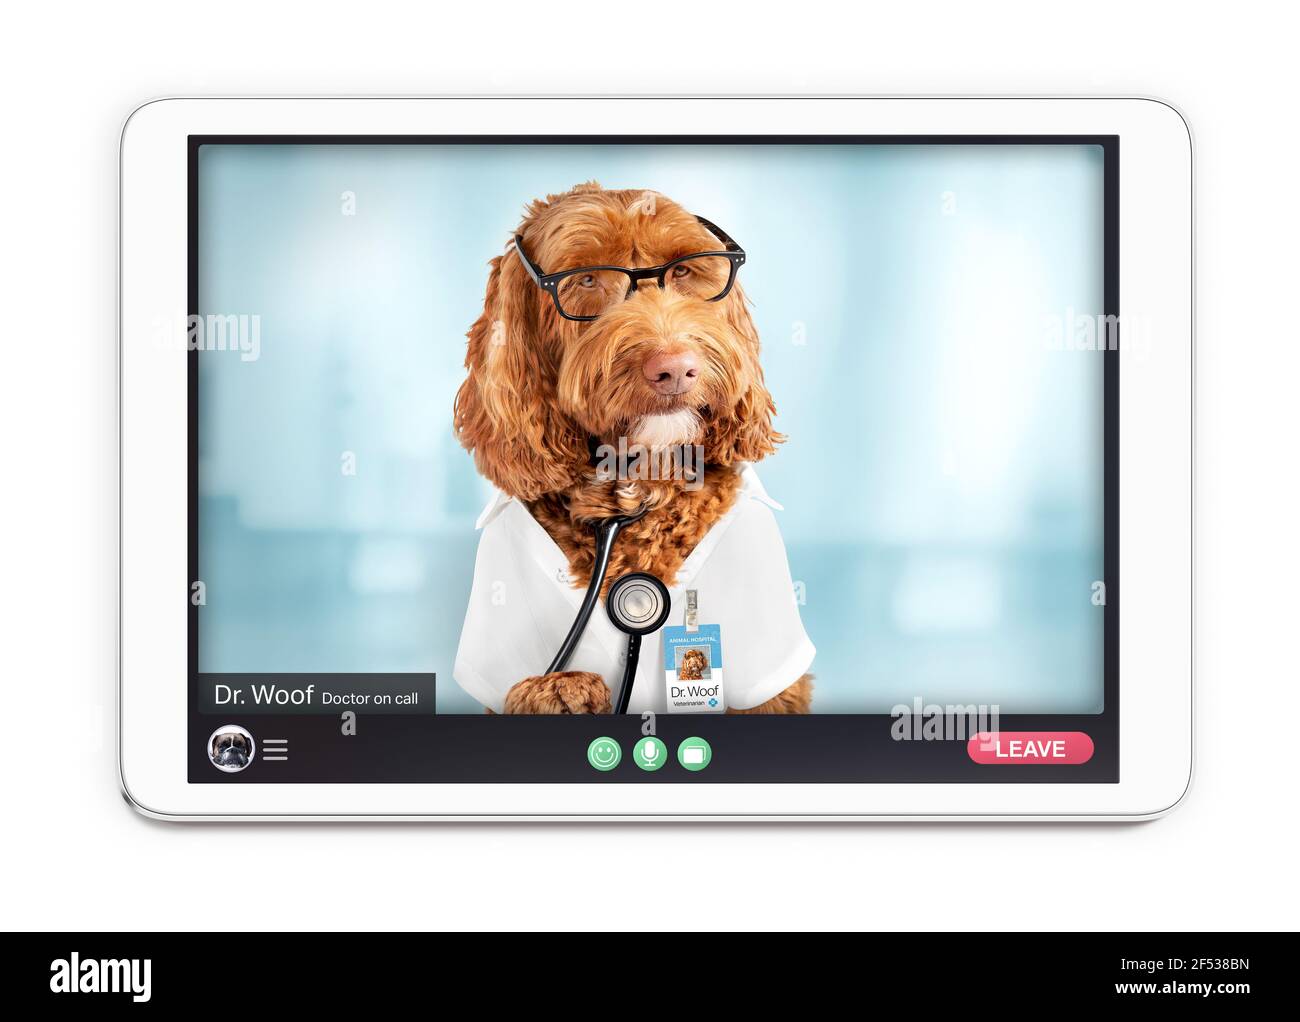 Médecin en ligne sur appel vidéo, thème animal ou animal de compagnie. Écran de tablette avec consultation numérique des soins de santé entre le patient et le dr. Woof, un chien de Labradoodle. Banque D'Images